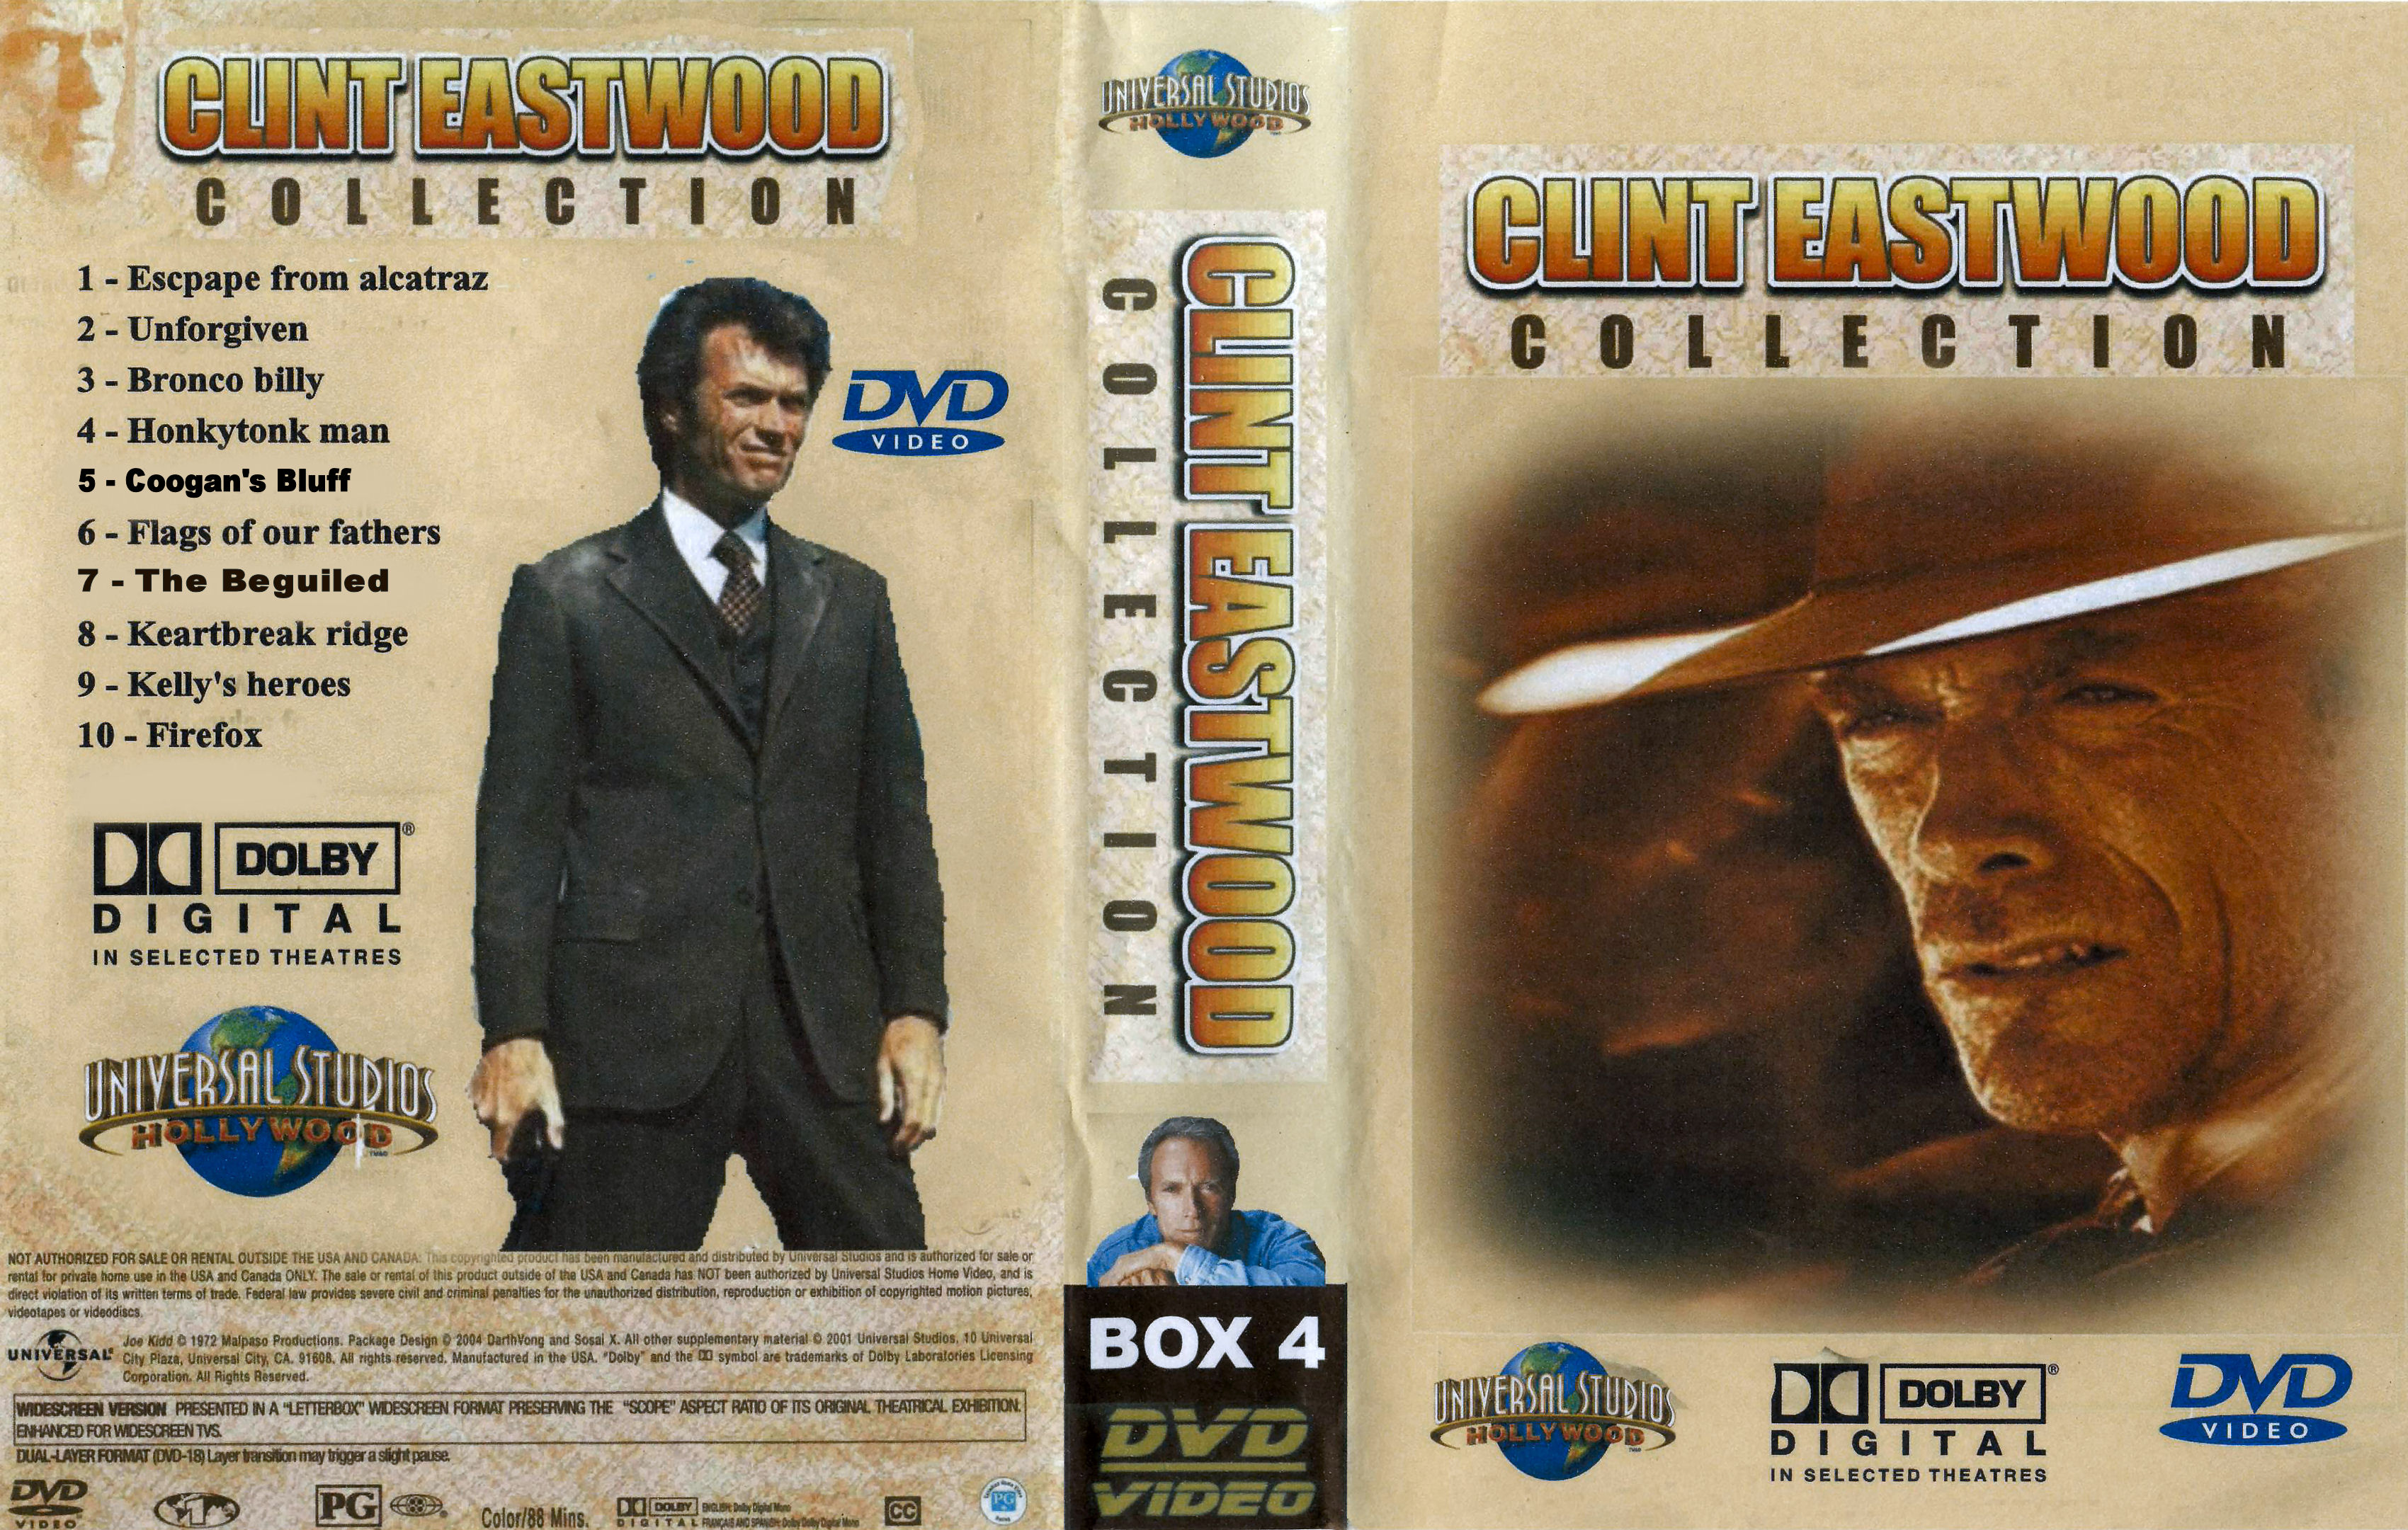 Clint Eastwood Collectie Box 4 DvD 1 van 10